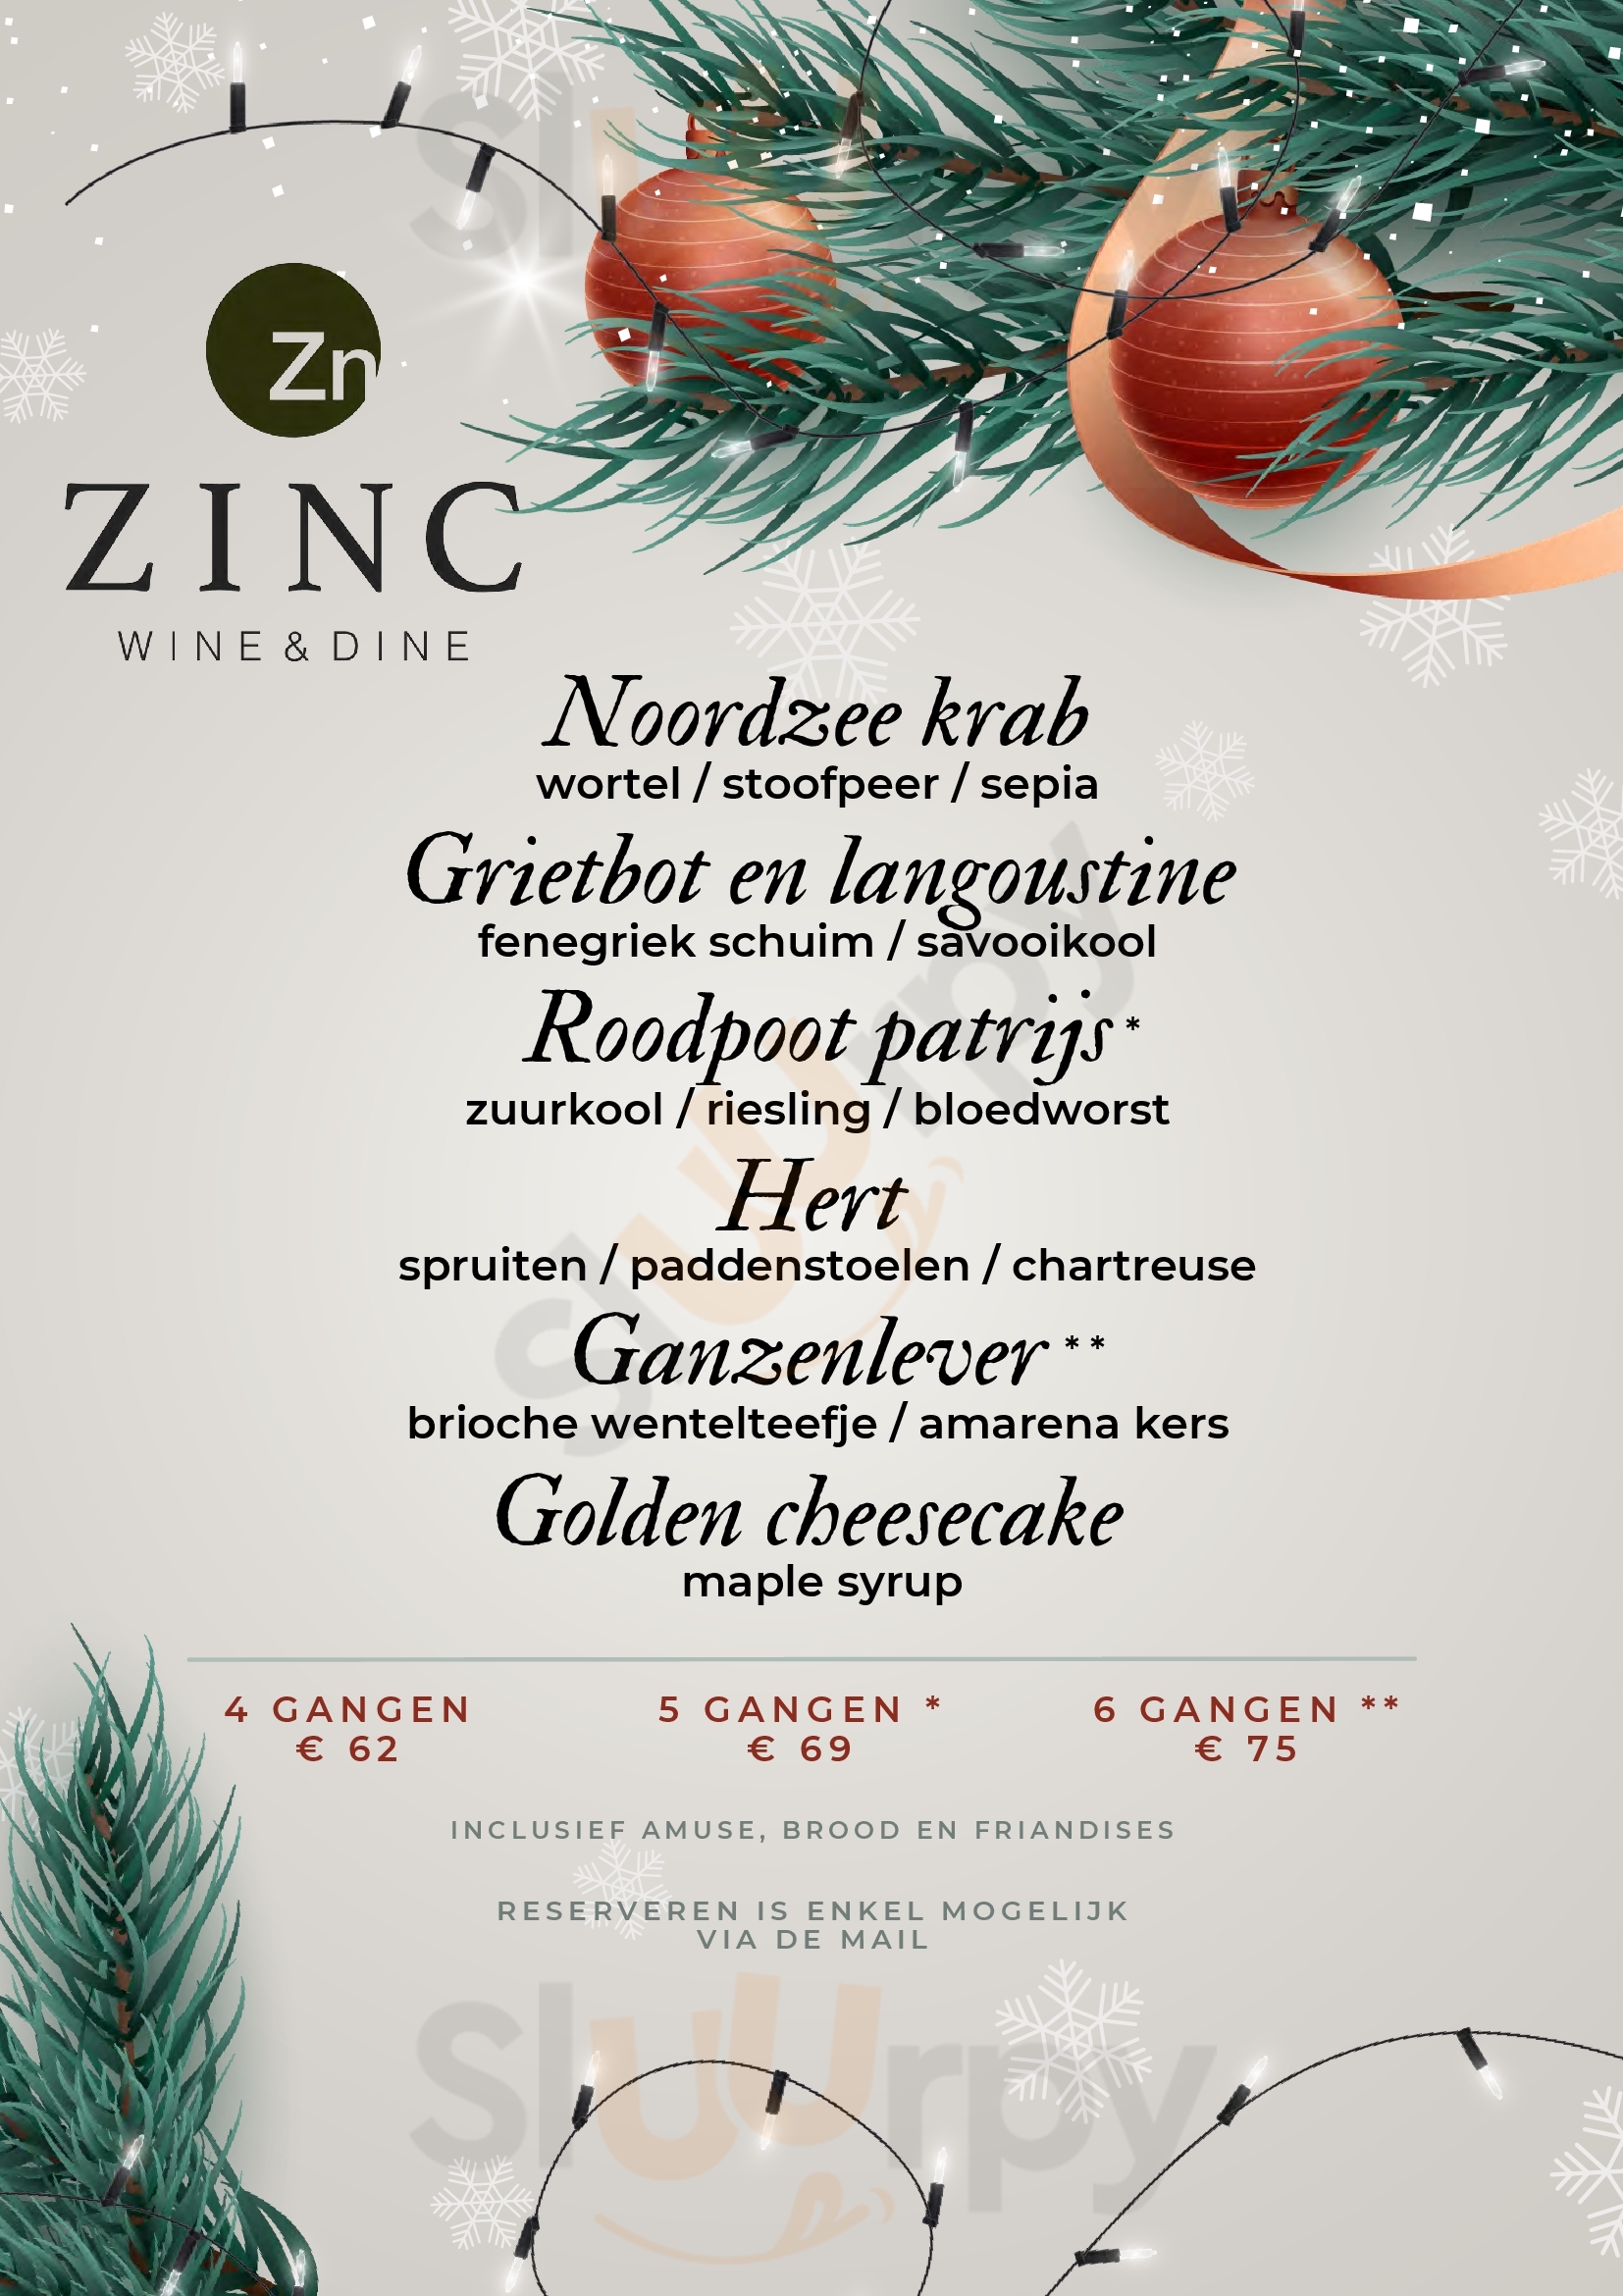 Zinc Wine & Dine Roermond Menu - 1